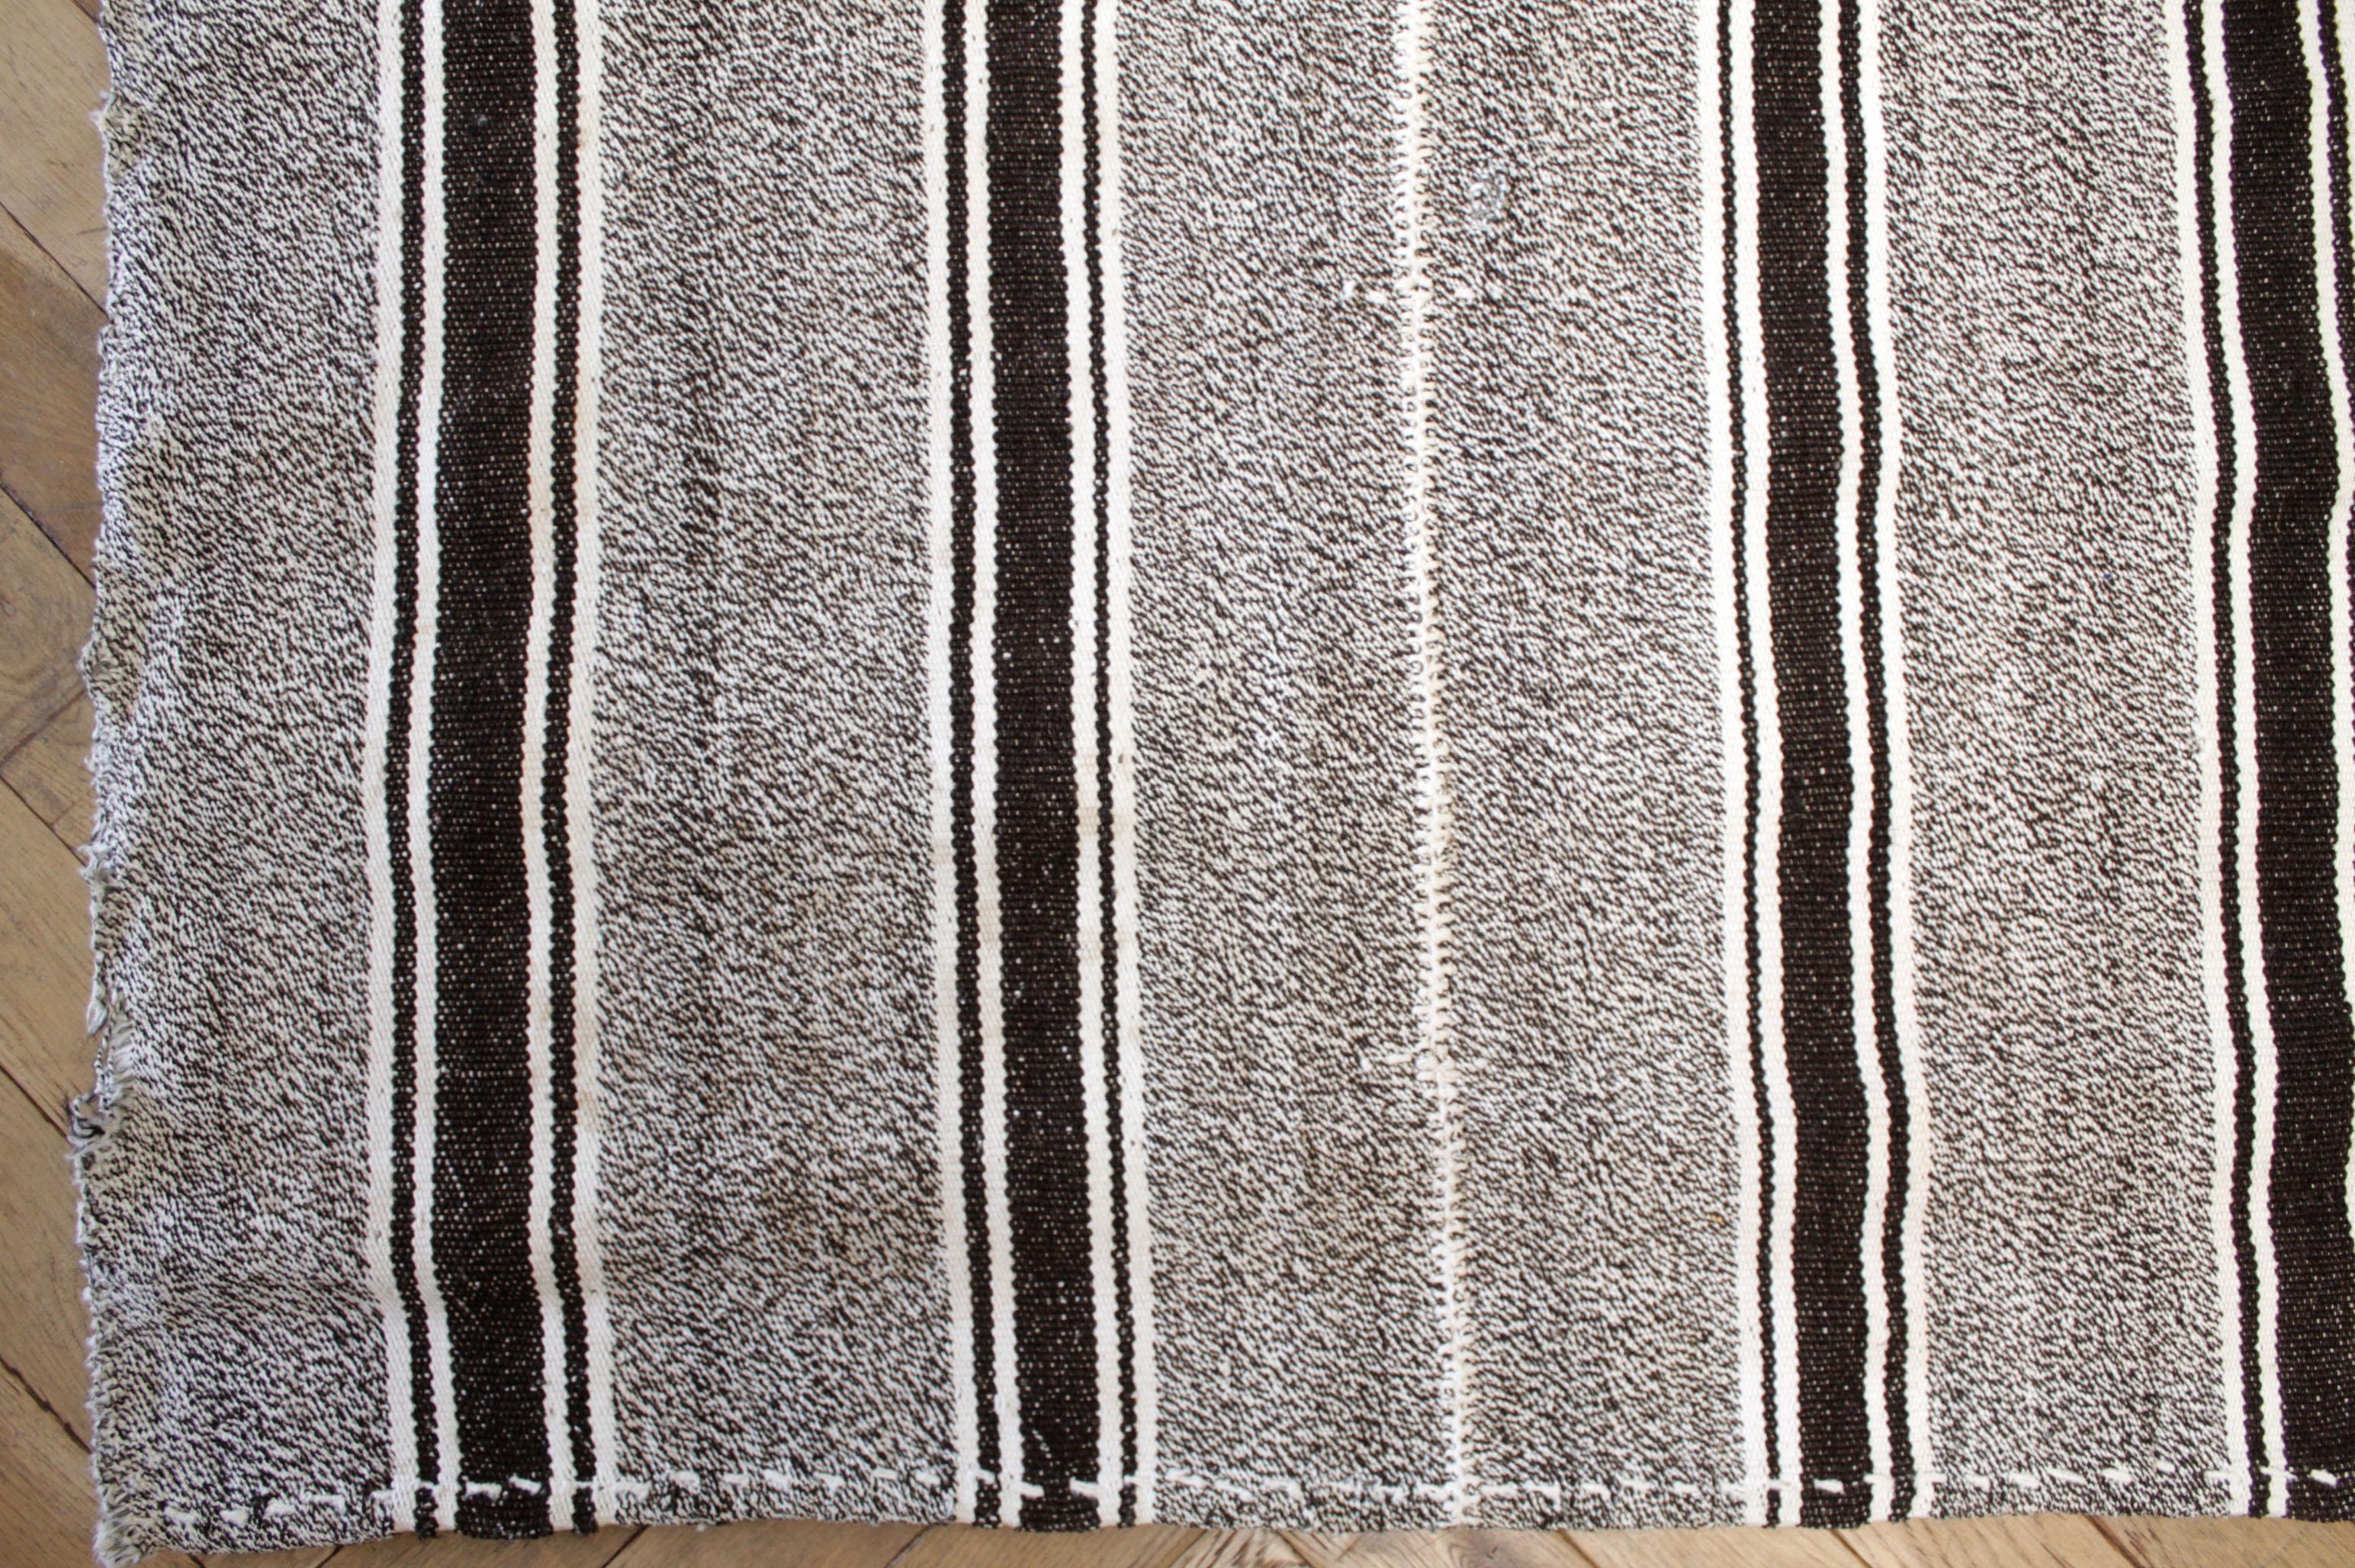 Peyton-Teppich
Türkischer Vintage-Teppich in Braun mit weißer Webart und cremeweißen Streifen, mit dunkelbraunen Streifen.
Flachgewebe, Wolle und Ziegenhaar machen sie extrem haltbar und eignen sich hervorragend für stark frequentierte Bereiche.